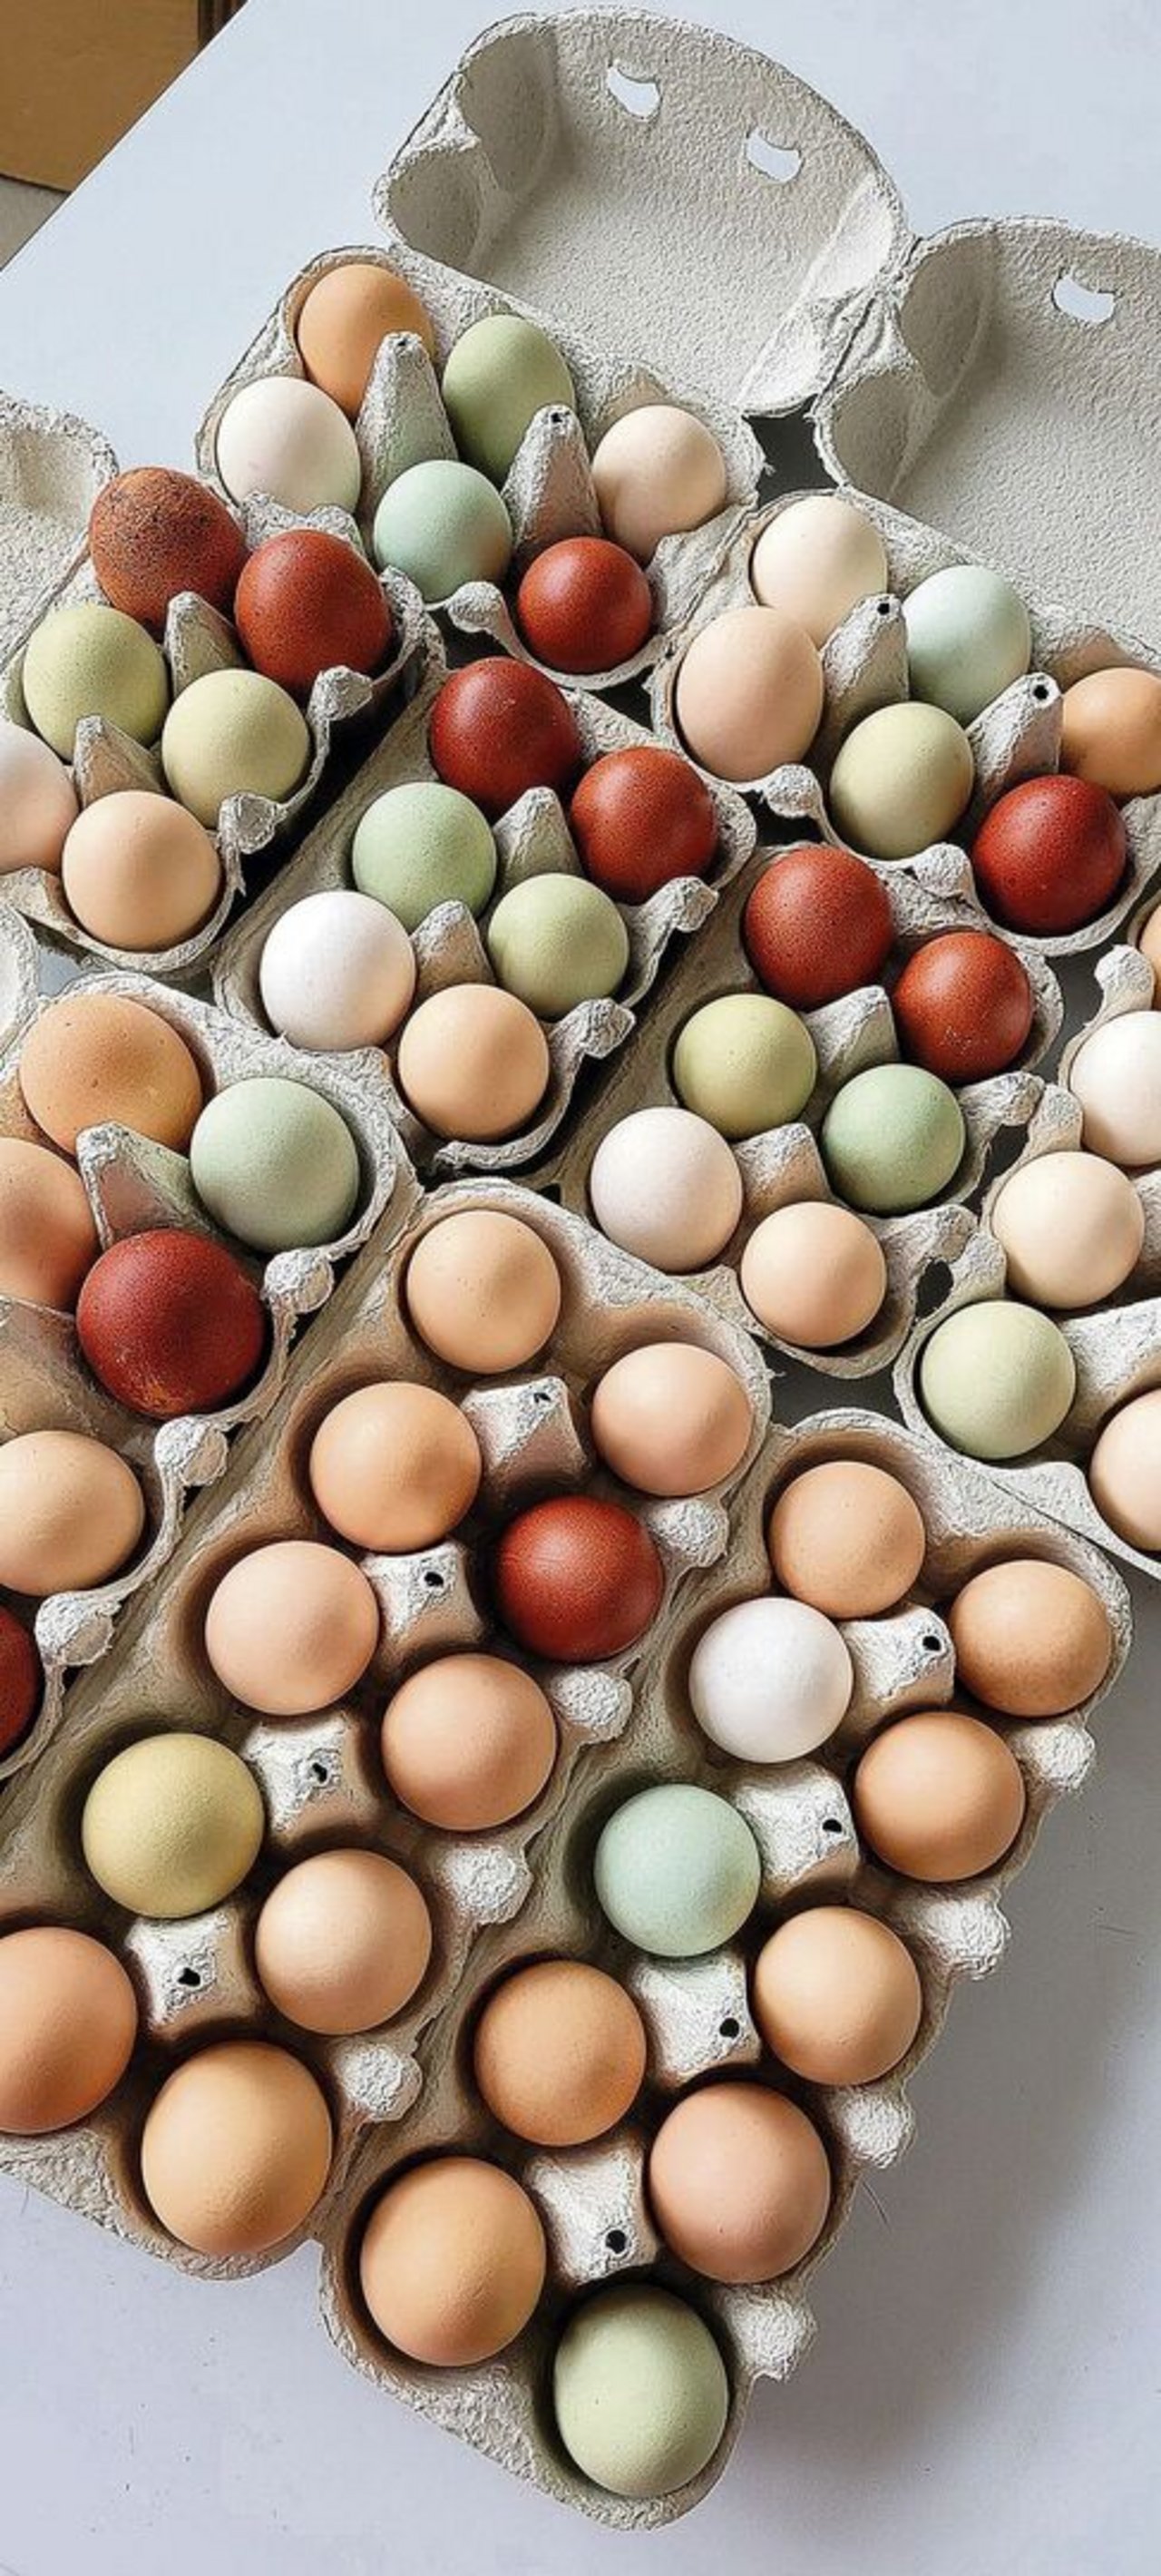 Die verschiedenen Eierschalenfarben sind ein Hingucker, die Farbe verblasst allerdings bei zu viel UV-Licht.